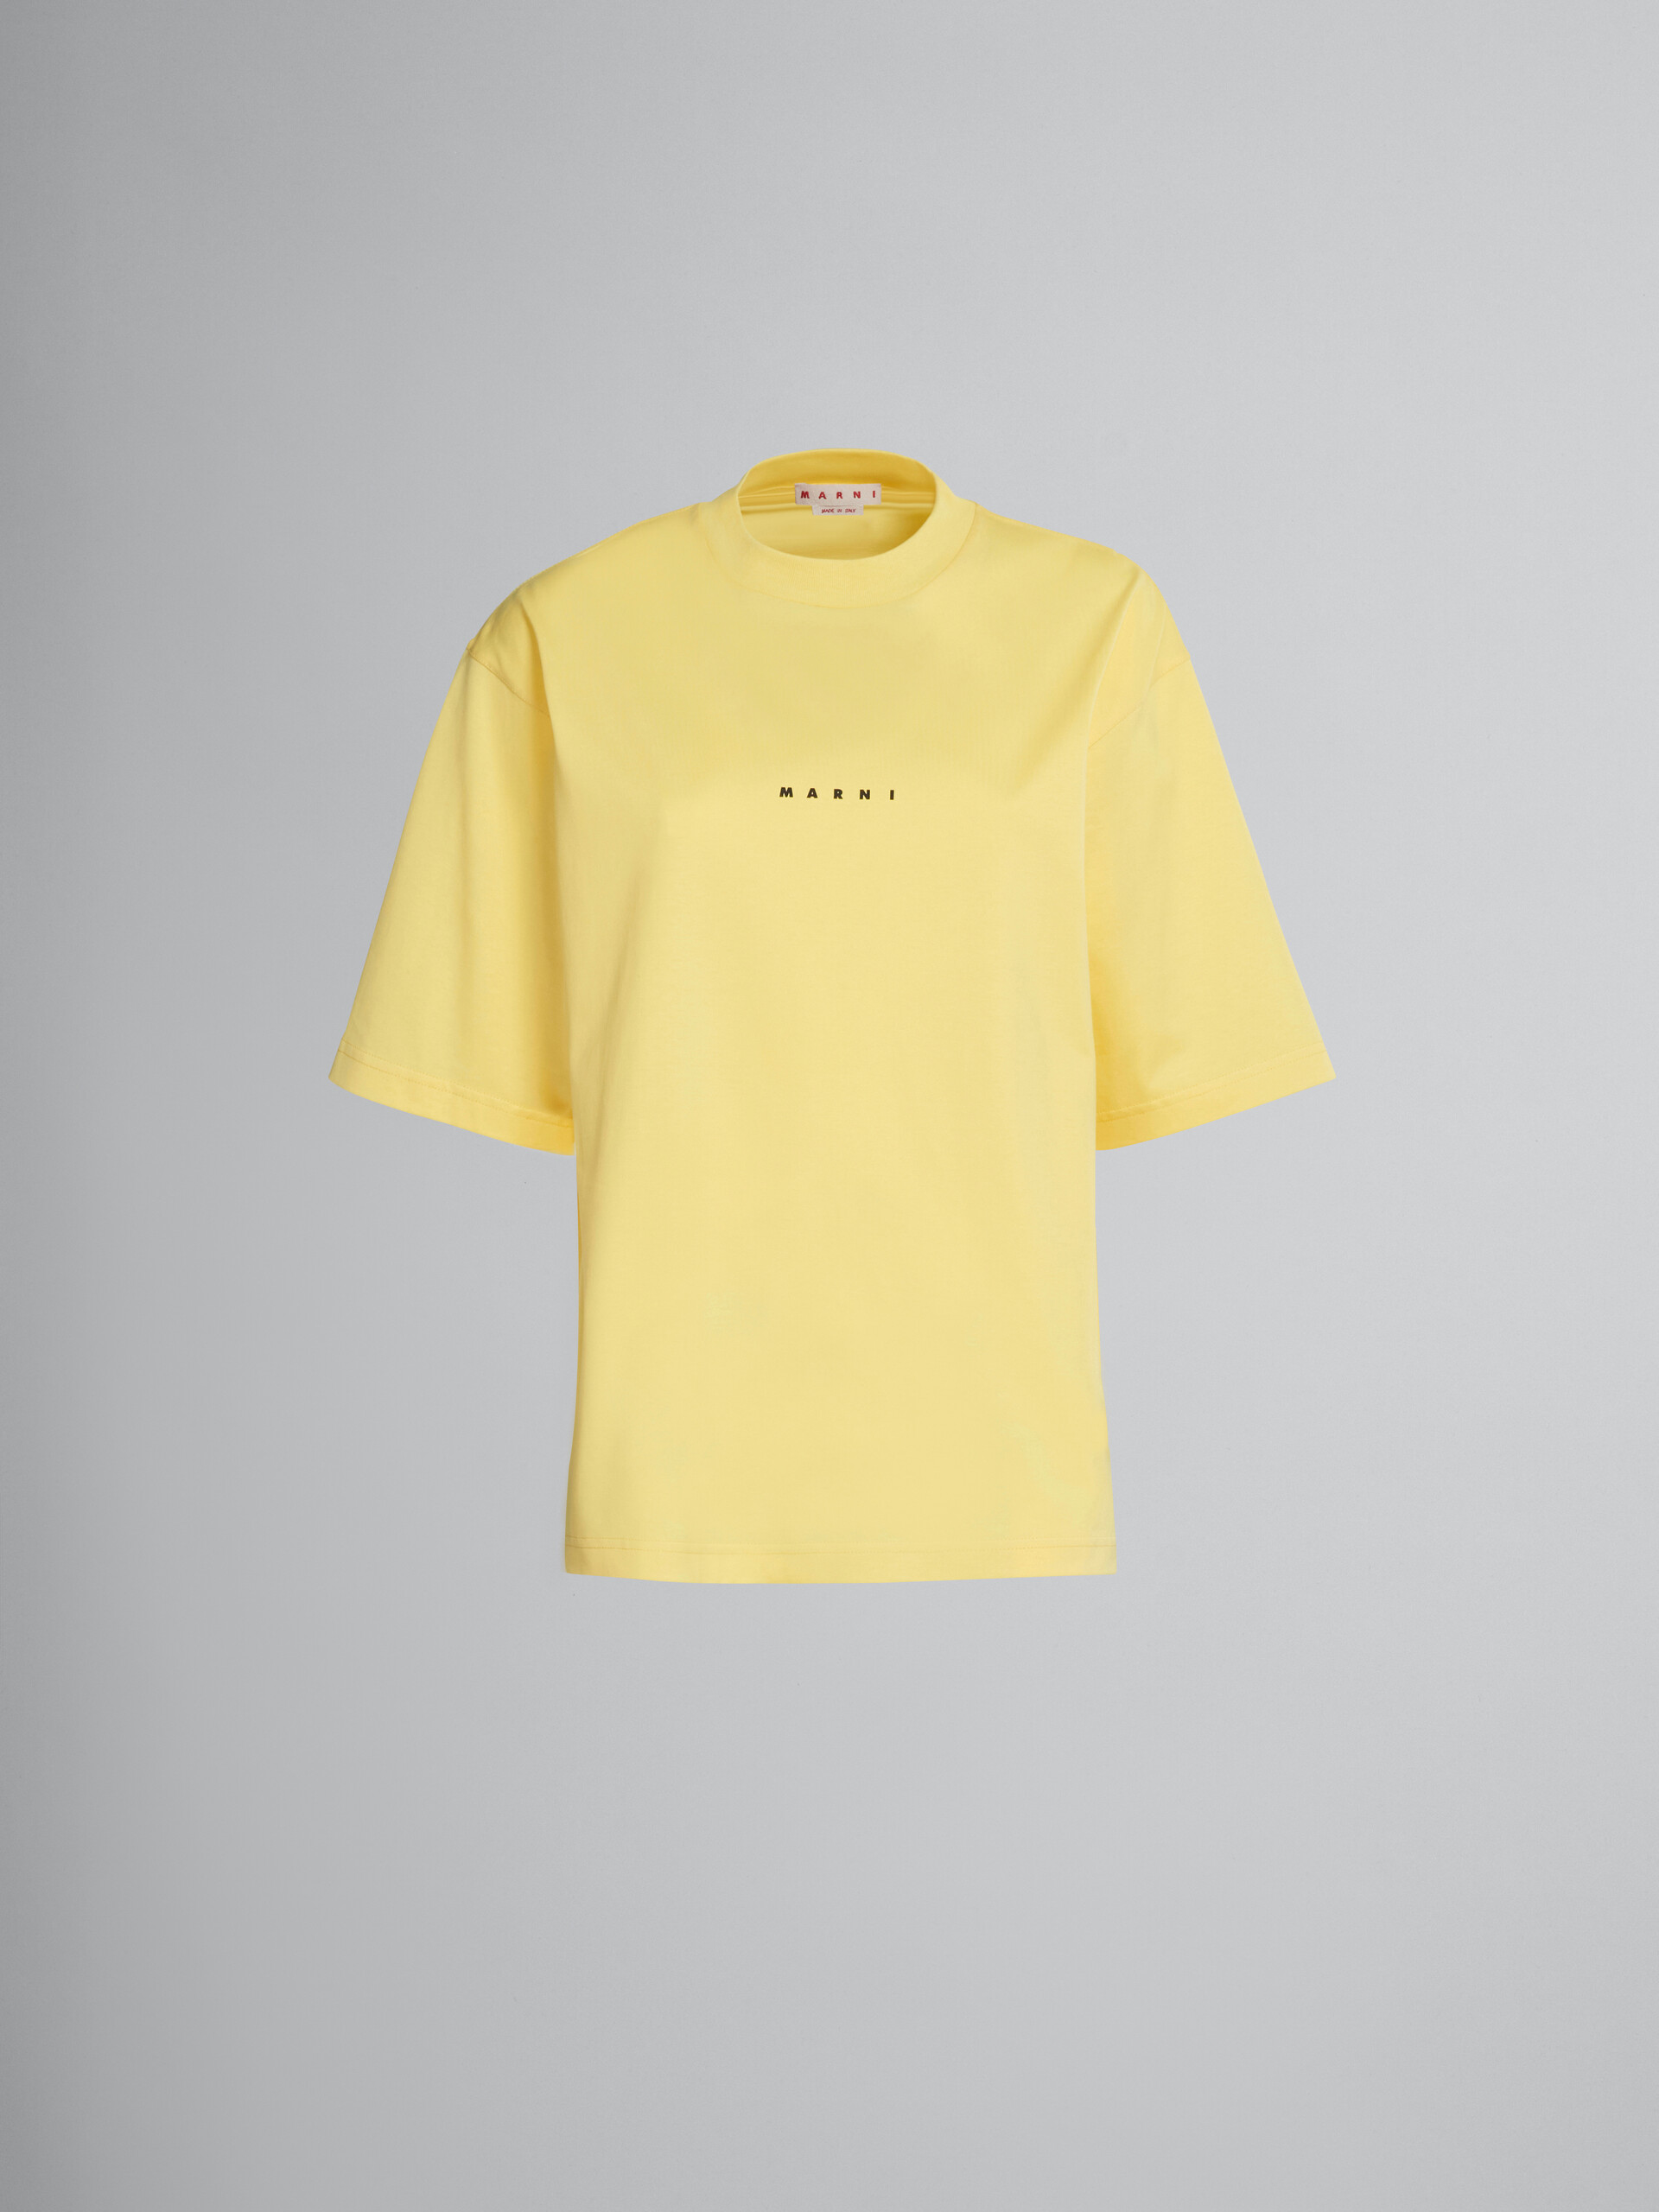 T-shirt en coton biologique jaune avec logo - T-shirts - Image 1